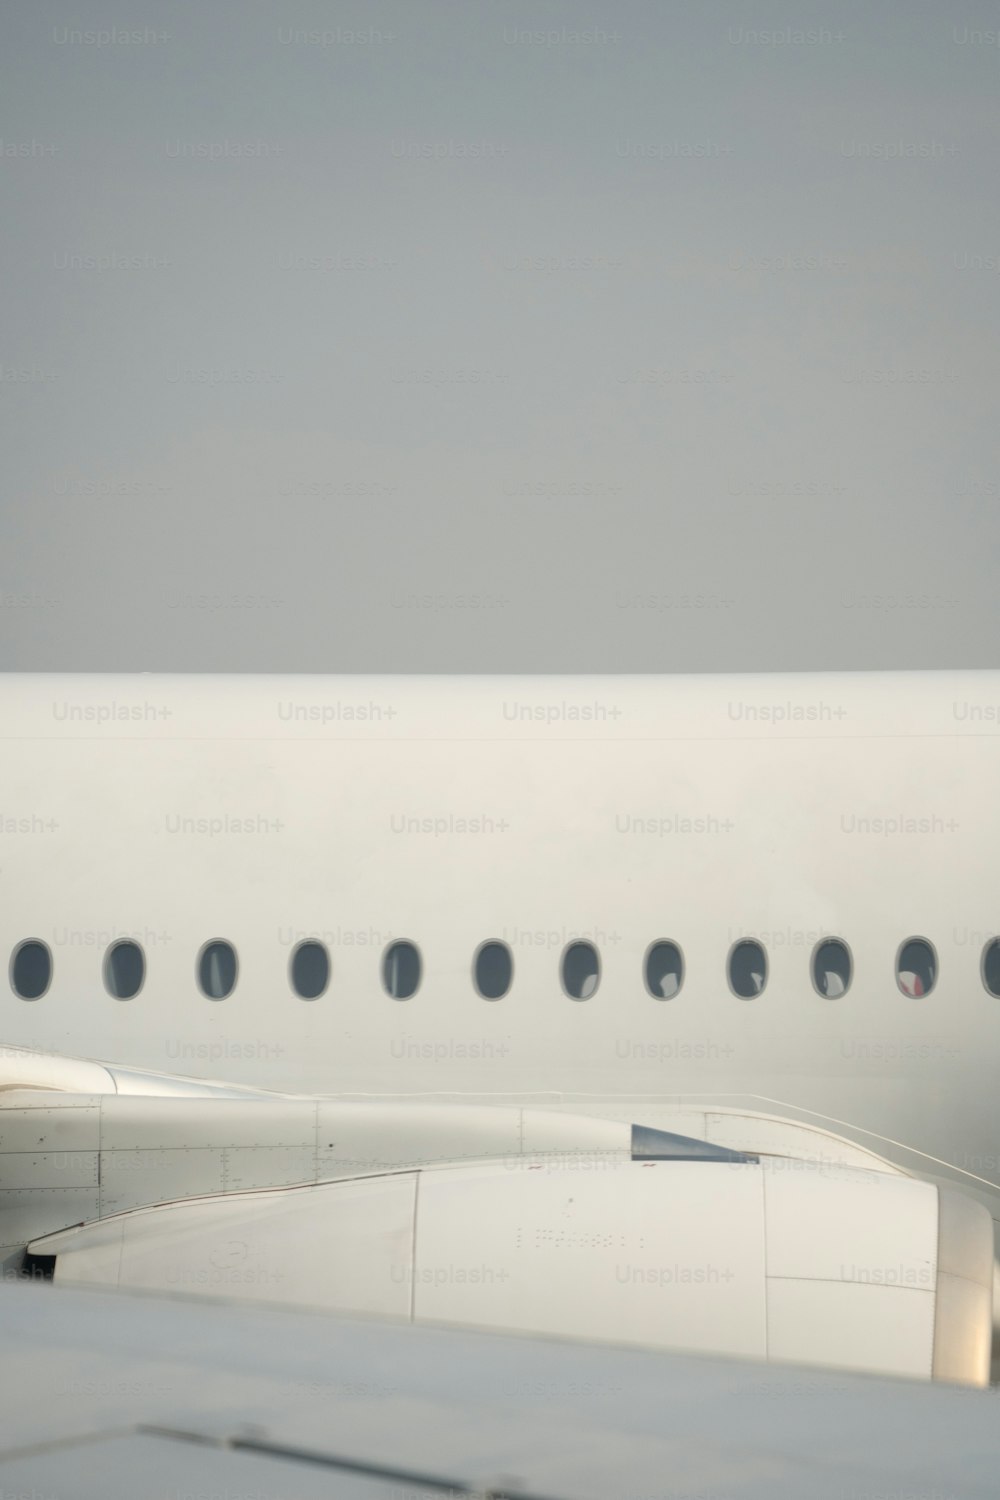 Un grande aereo di linea seduto sulla cima di una pista dell'aeroporto